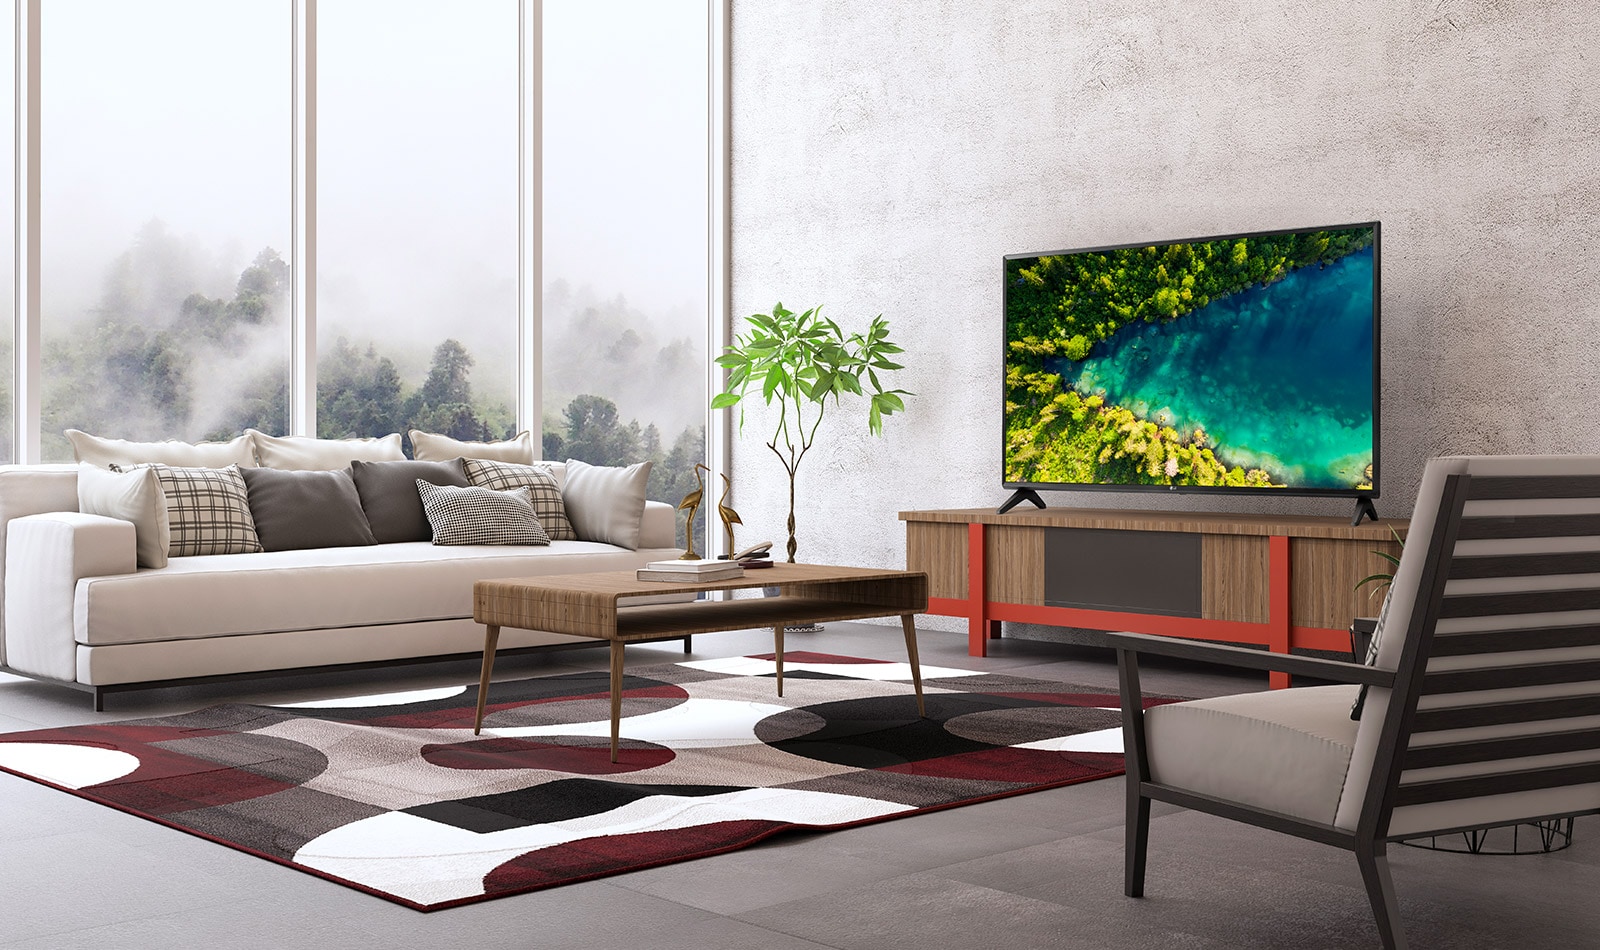 Modernā, vienkāršā mājas interjerā redzams televizors, kurā paveras skats no augšas uz upi, kas plūst caur biezu mežu.